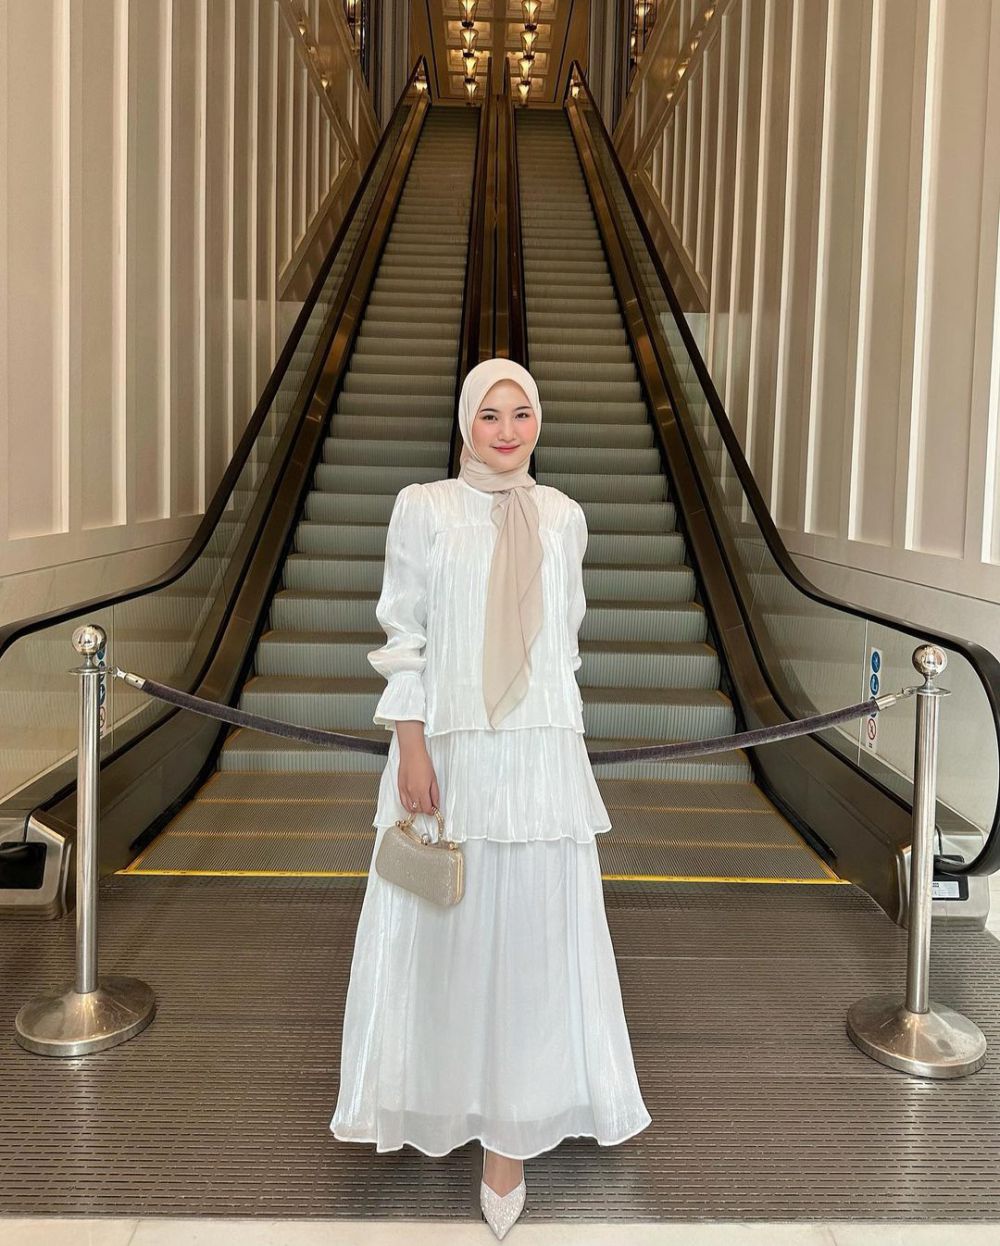 8 Inspirasi Outfit Lebaran Nuansa Putih ala Influencer, Elegan!